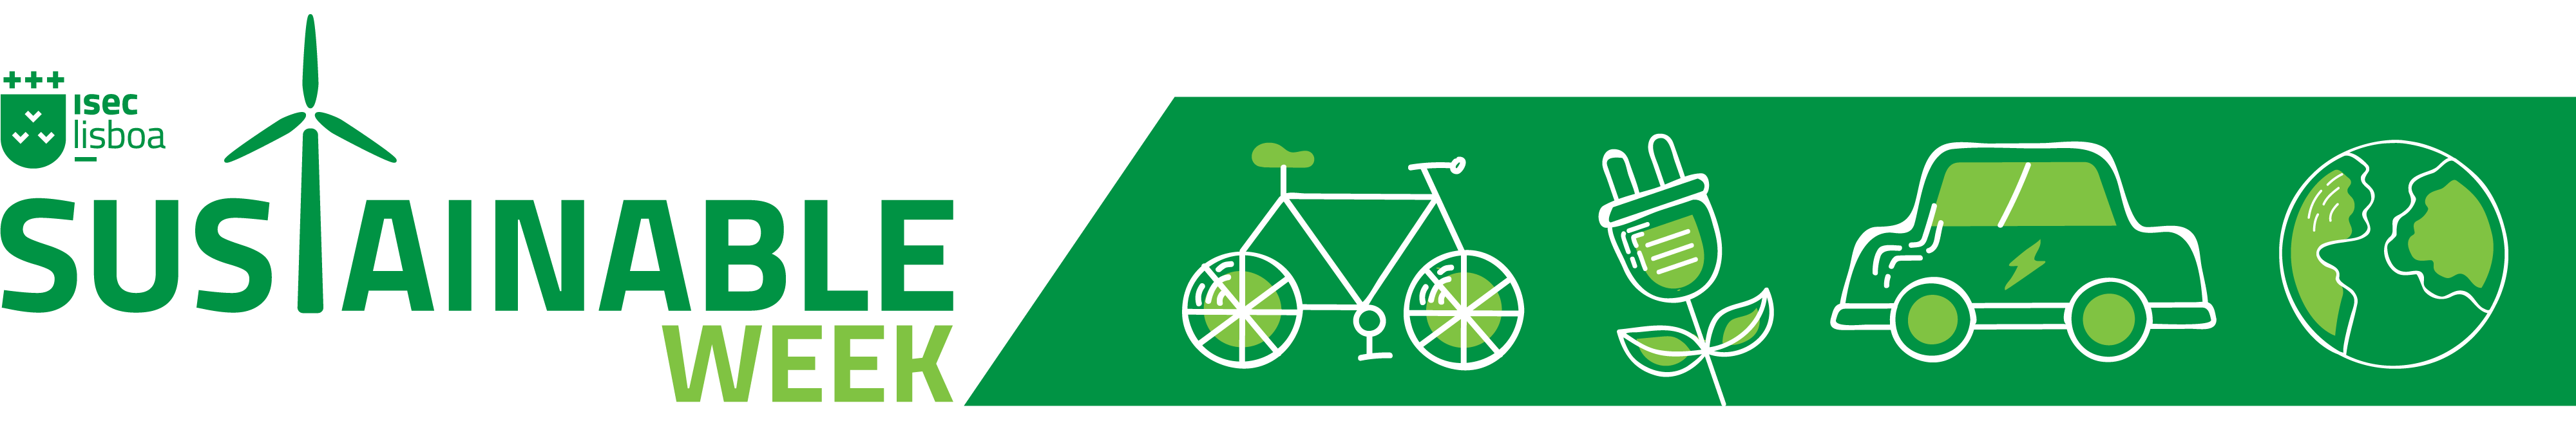 Logotipo do evento Sustainable Week e icones de uma bicicleta, ficha elétrica, carro elétrico e planeta Terra